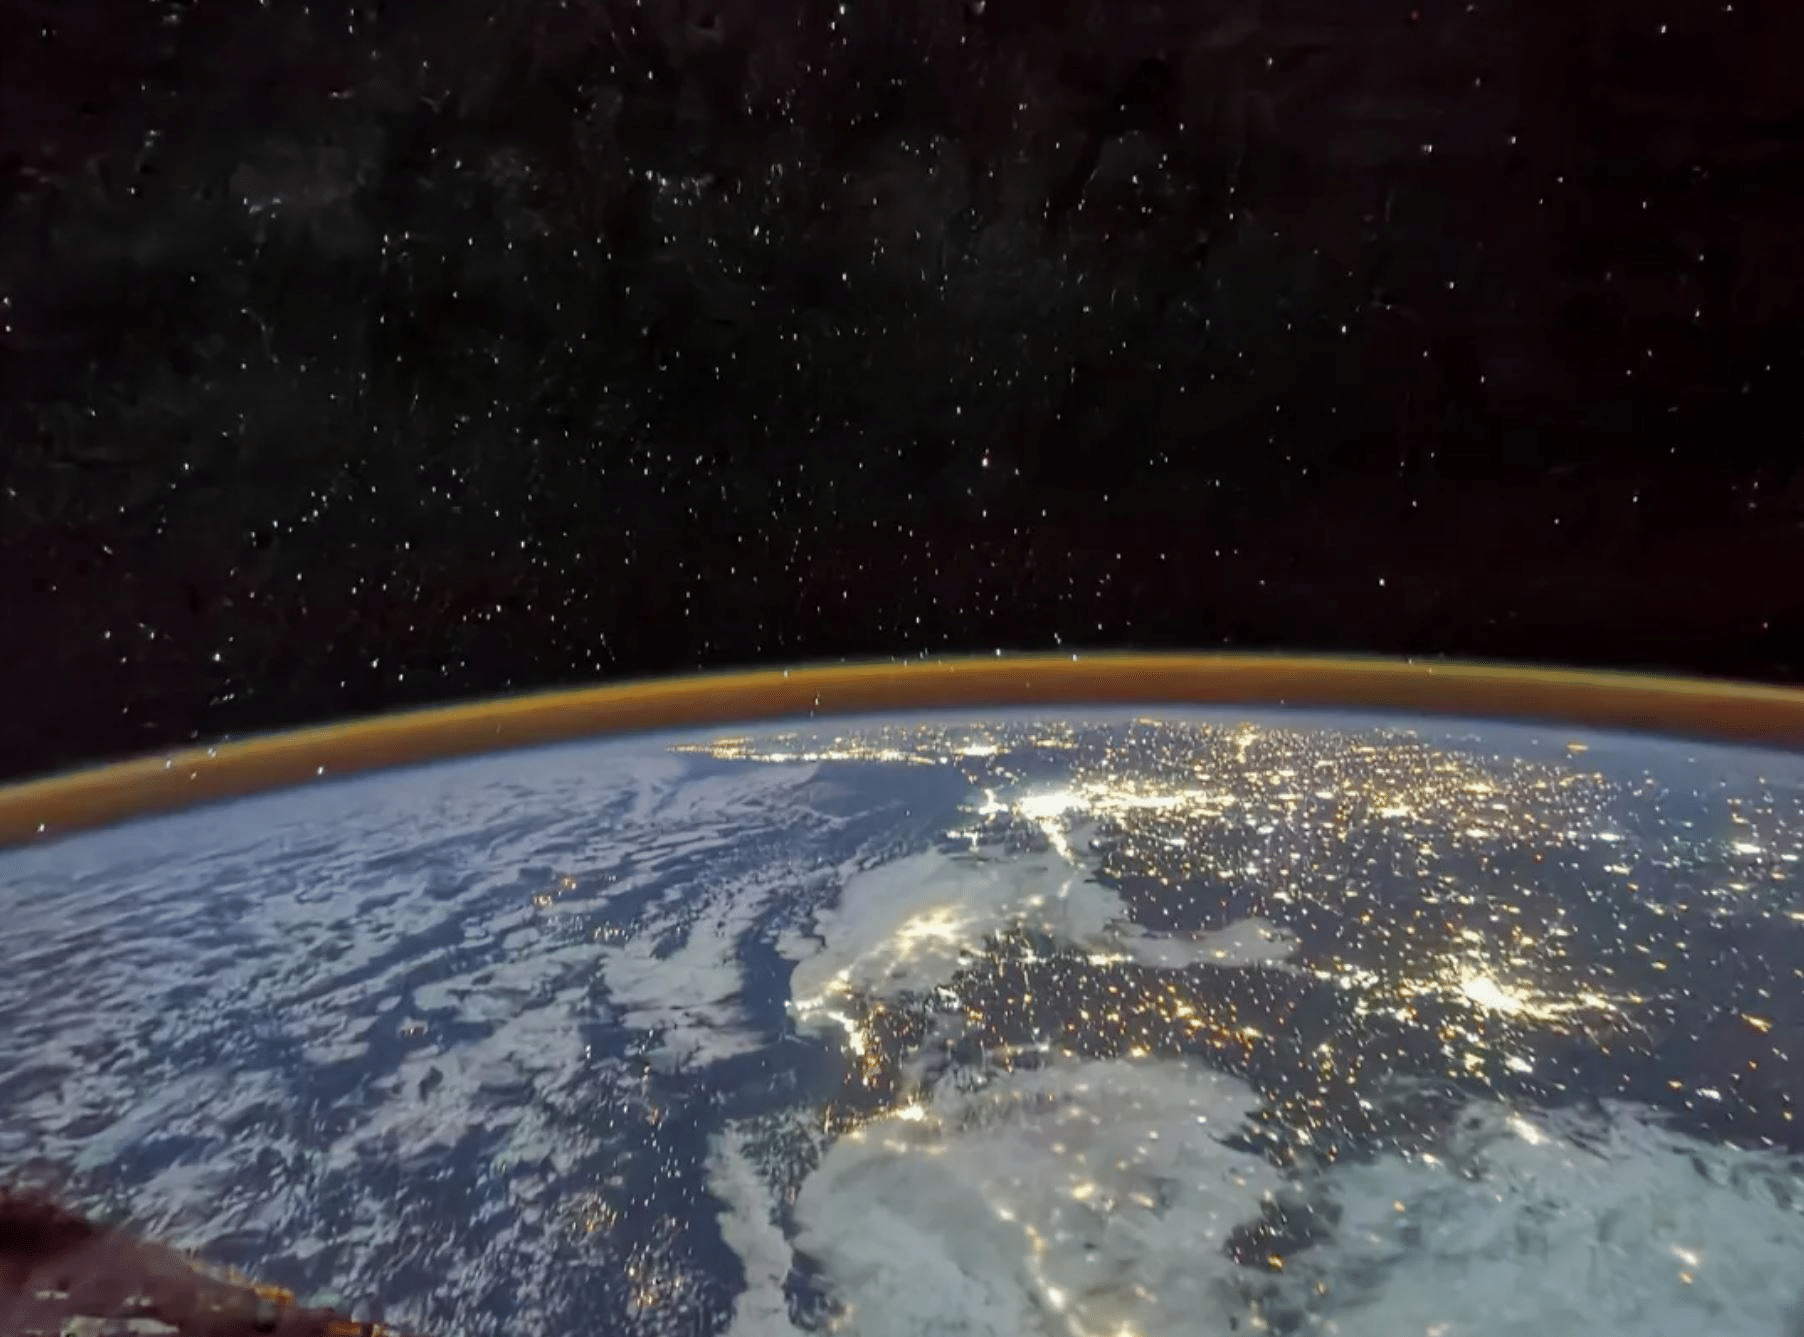 Фото из космоса